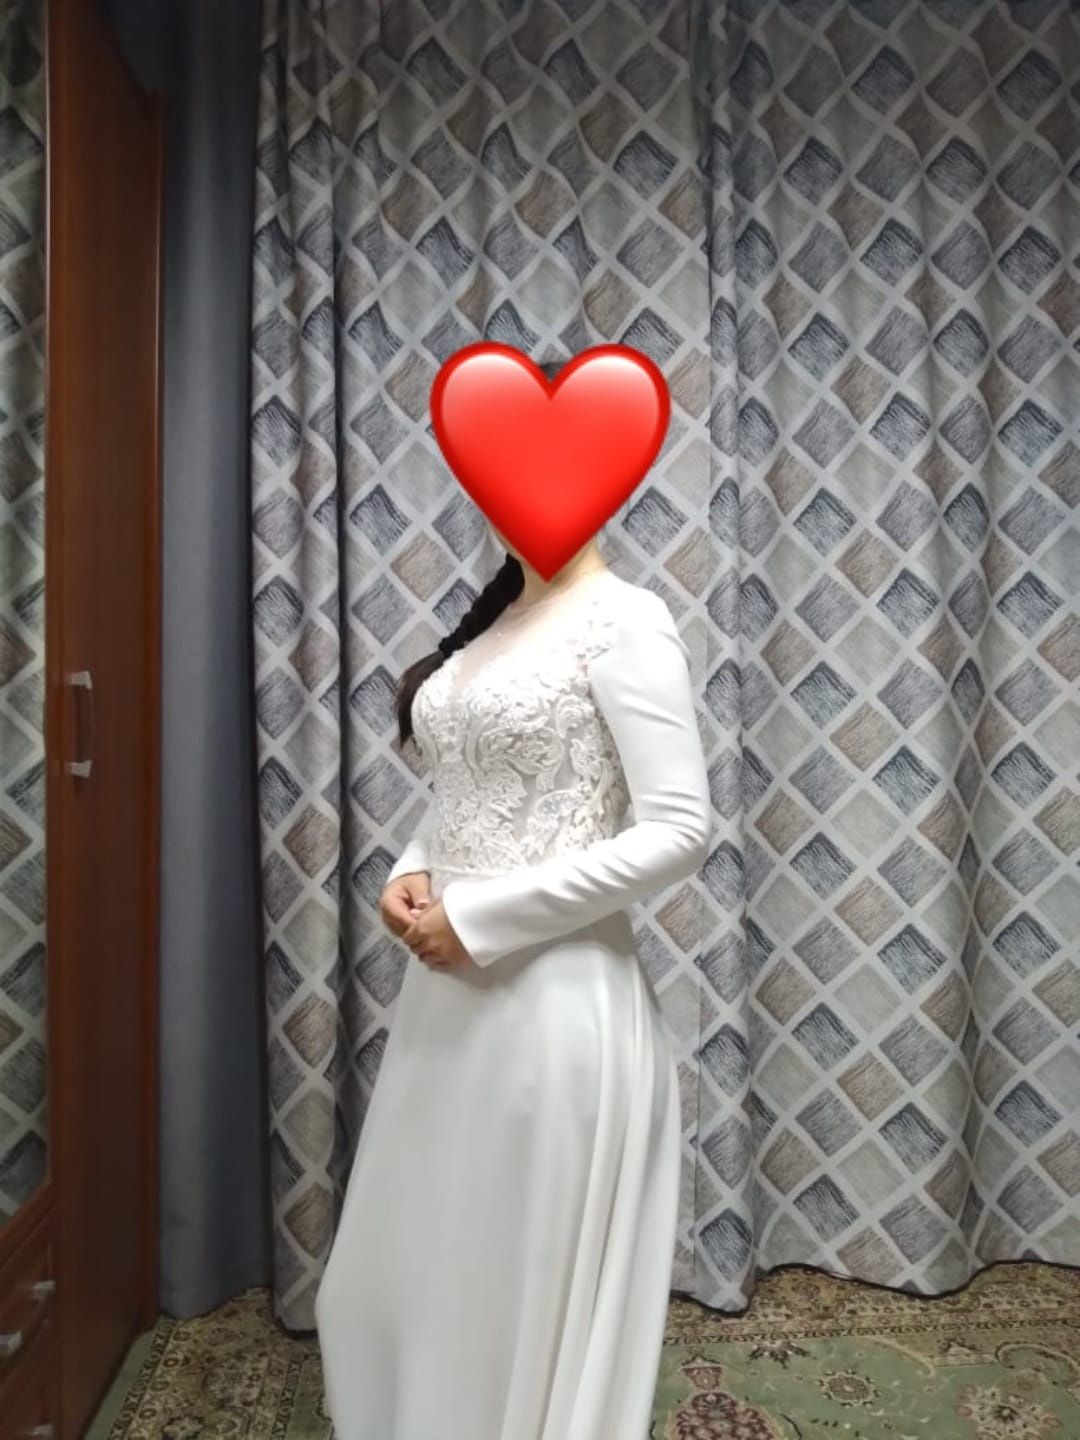 Белое платье на свадьбу и узату